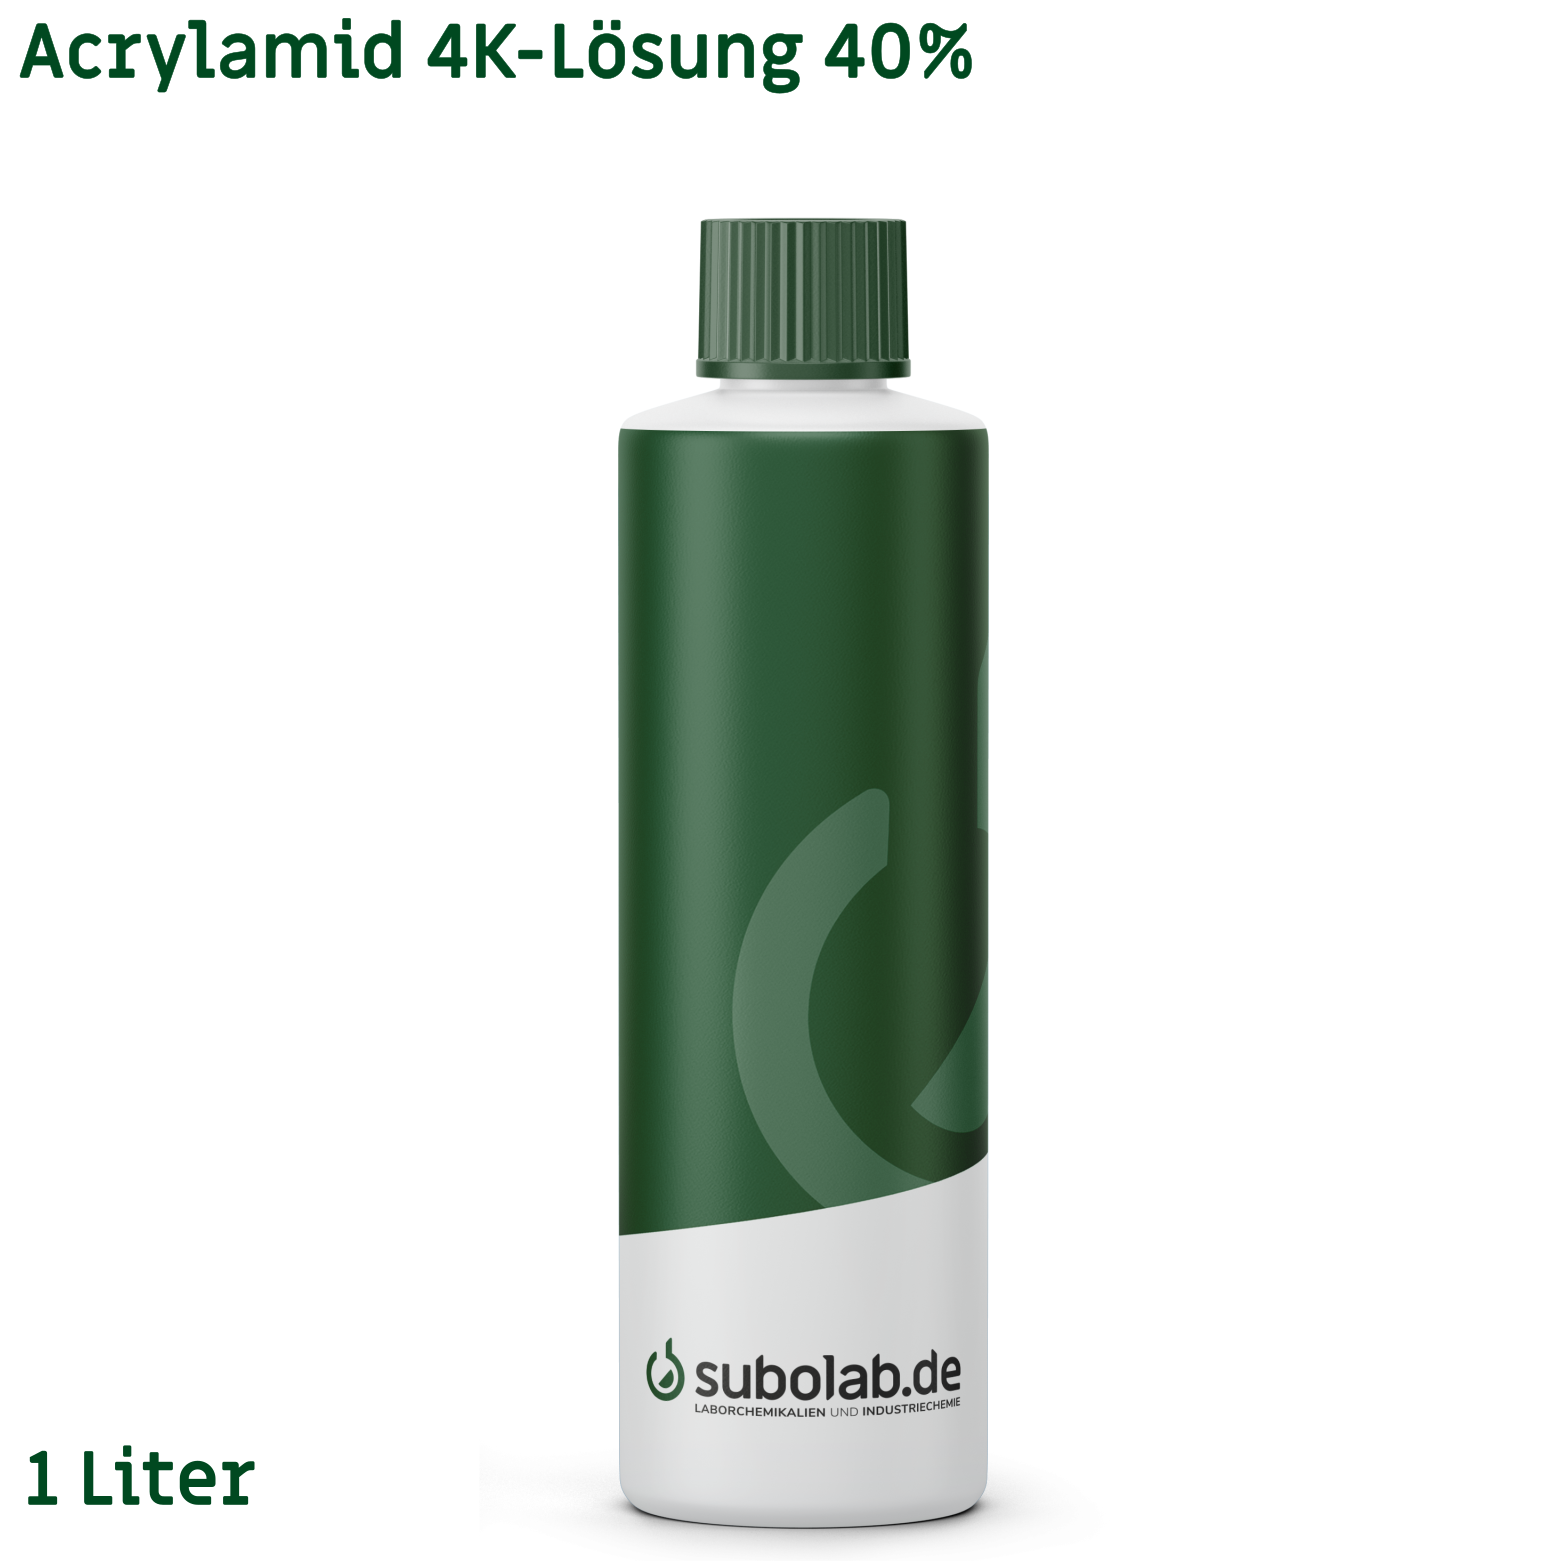 Bild von Acrylamid 4K-Lösung 40% (1 Liter)